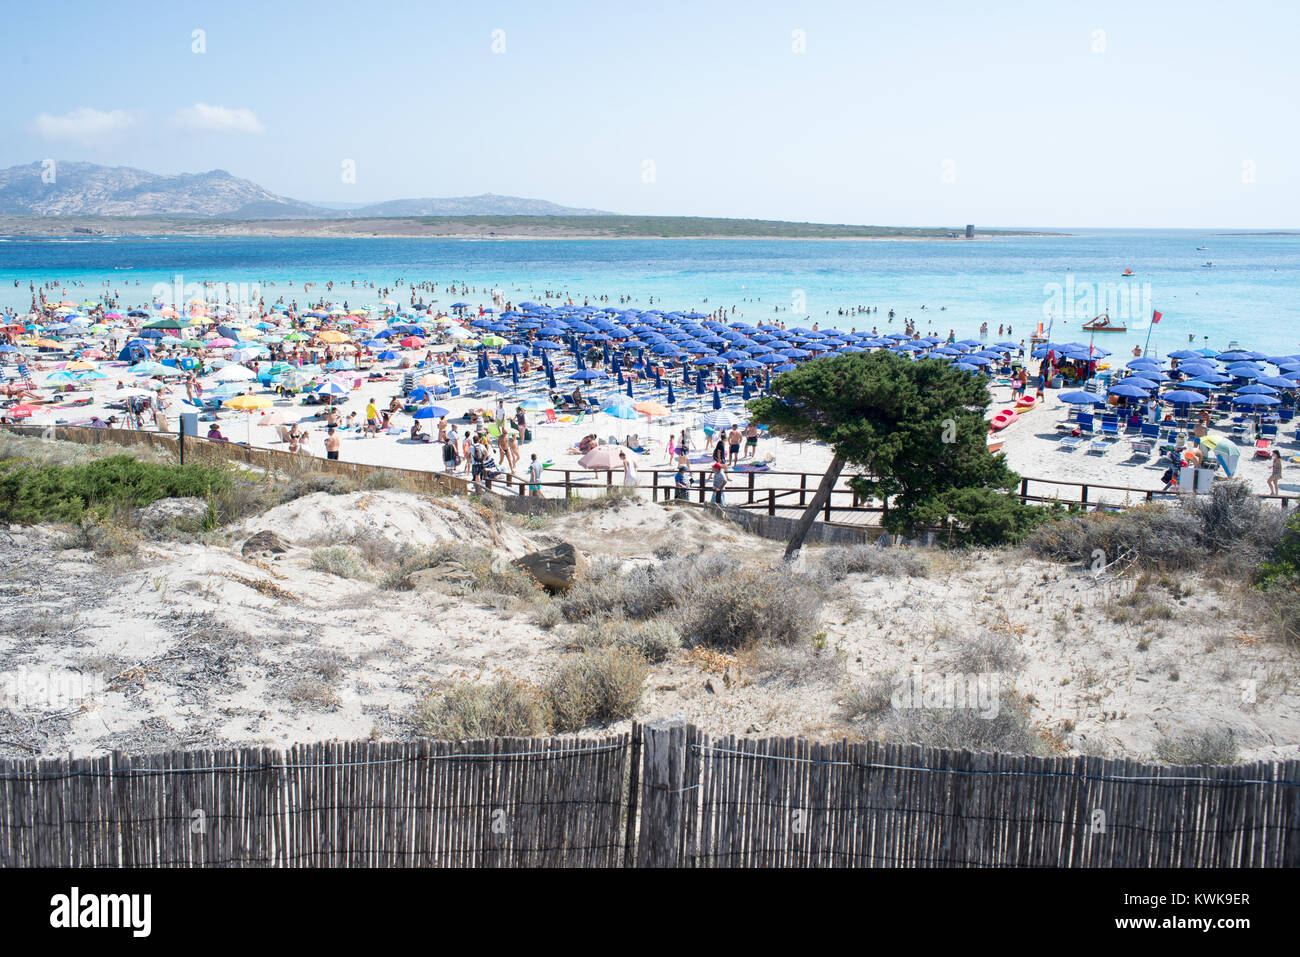 Panoramablick auf die Pelosa Strand in Stintino Sardinien in vollem touristischen Saison. Hunderte von Touristen in Scharen zu den schönen, aber kleinen Strand Stockfoto